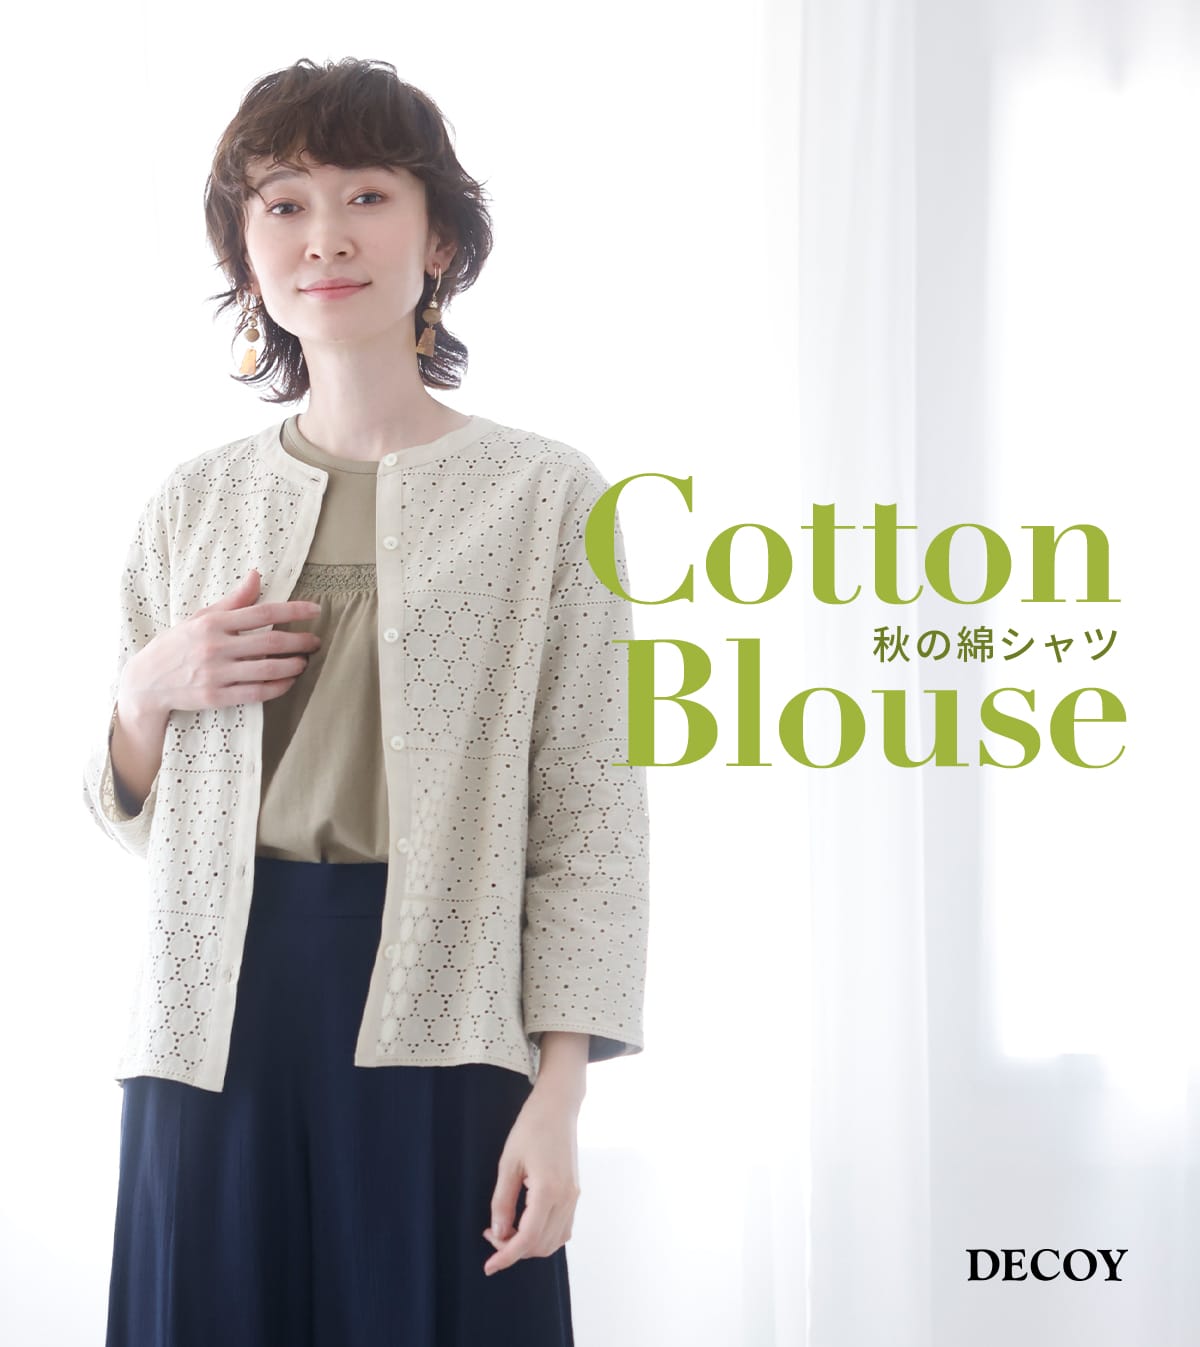 Cotton Blouse 秋の綿シャツ